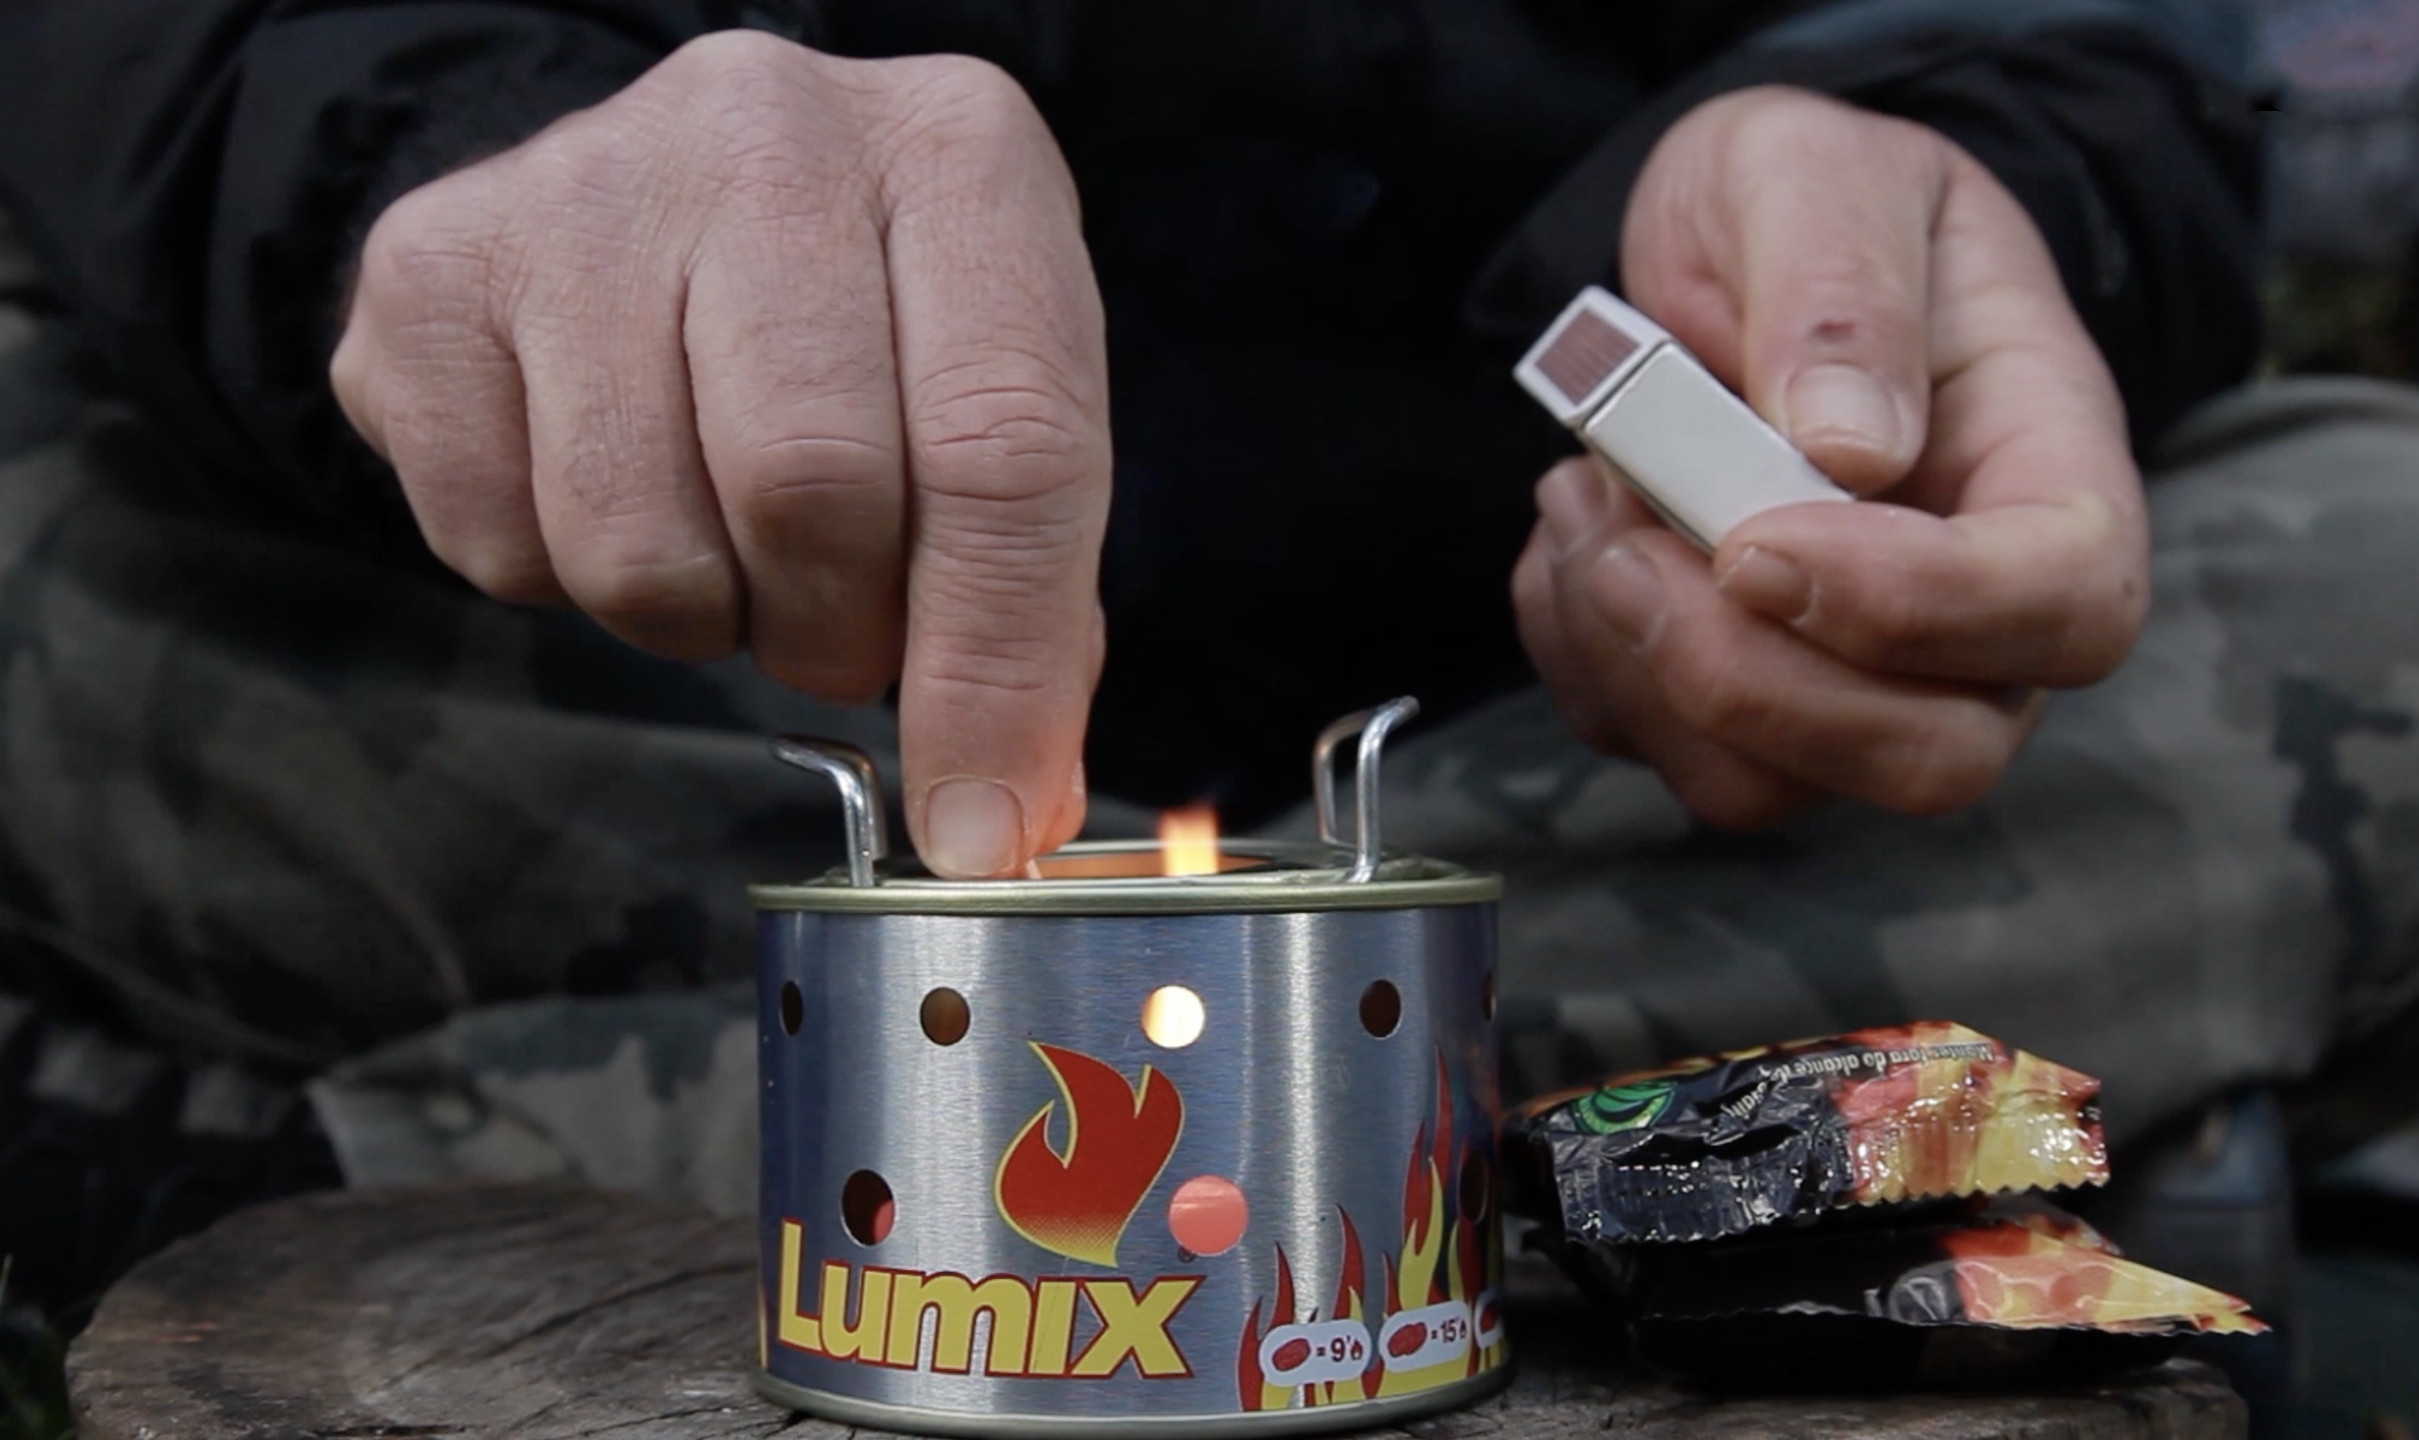 Acendedores Lumix foram feitos pensados na segurança na hora de acender